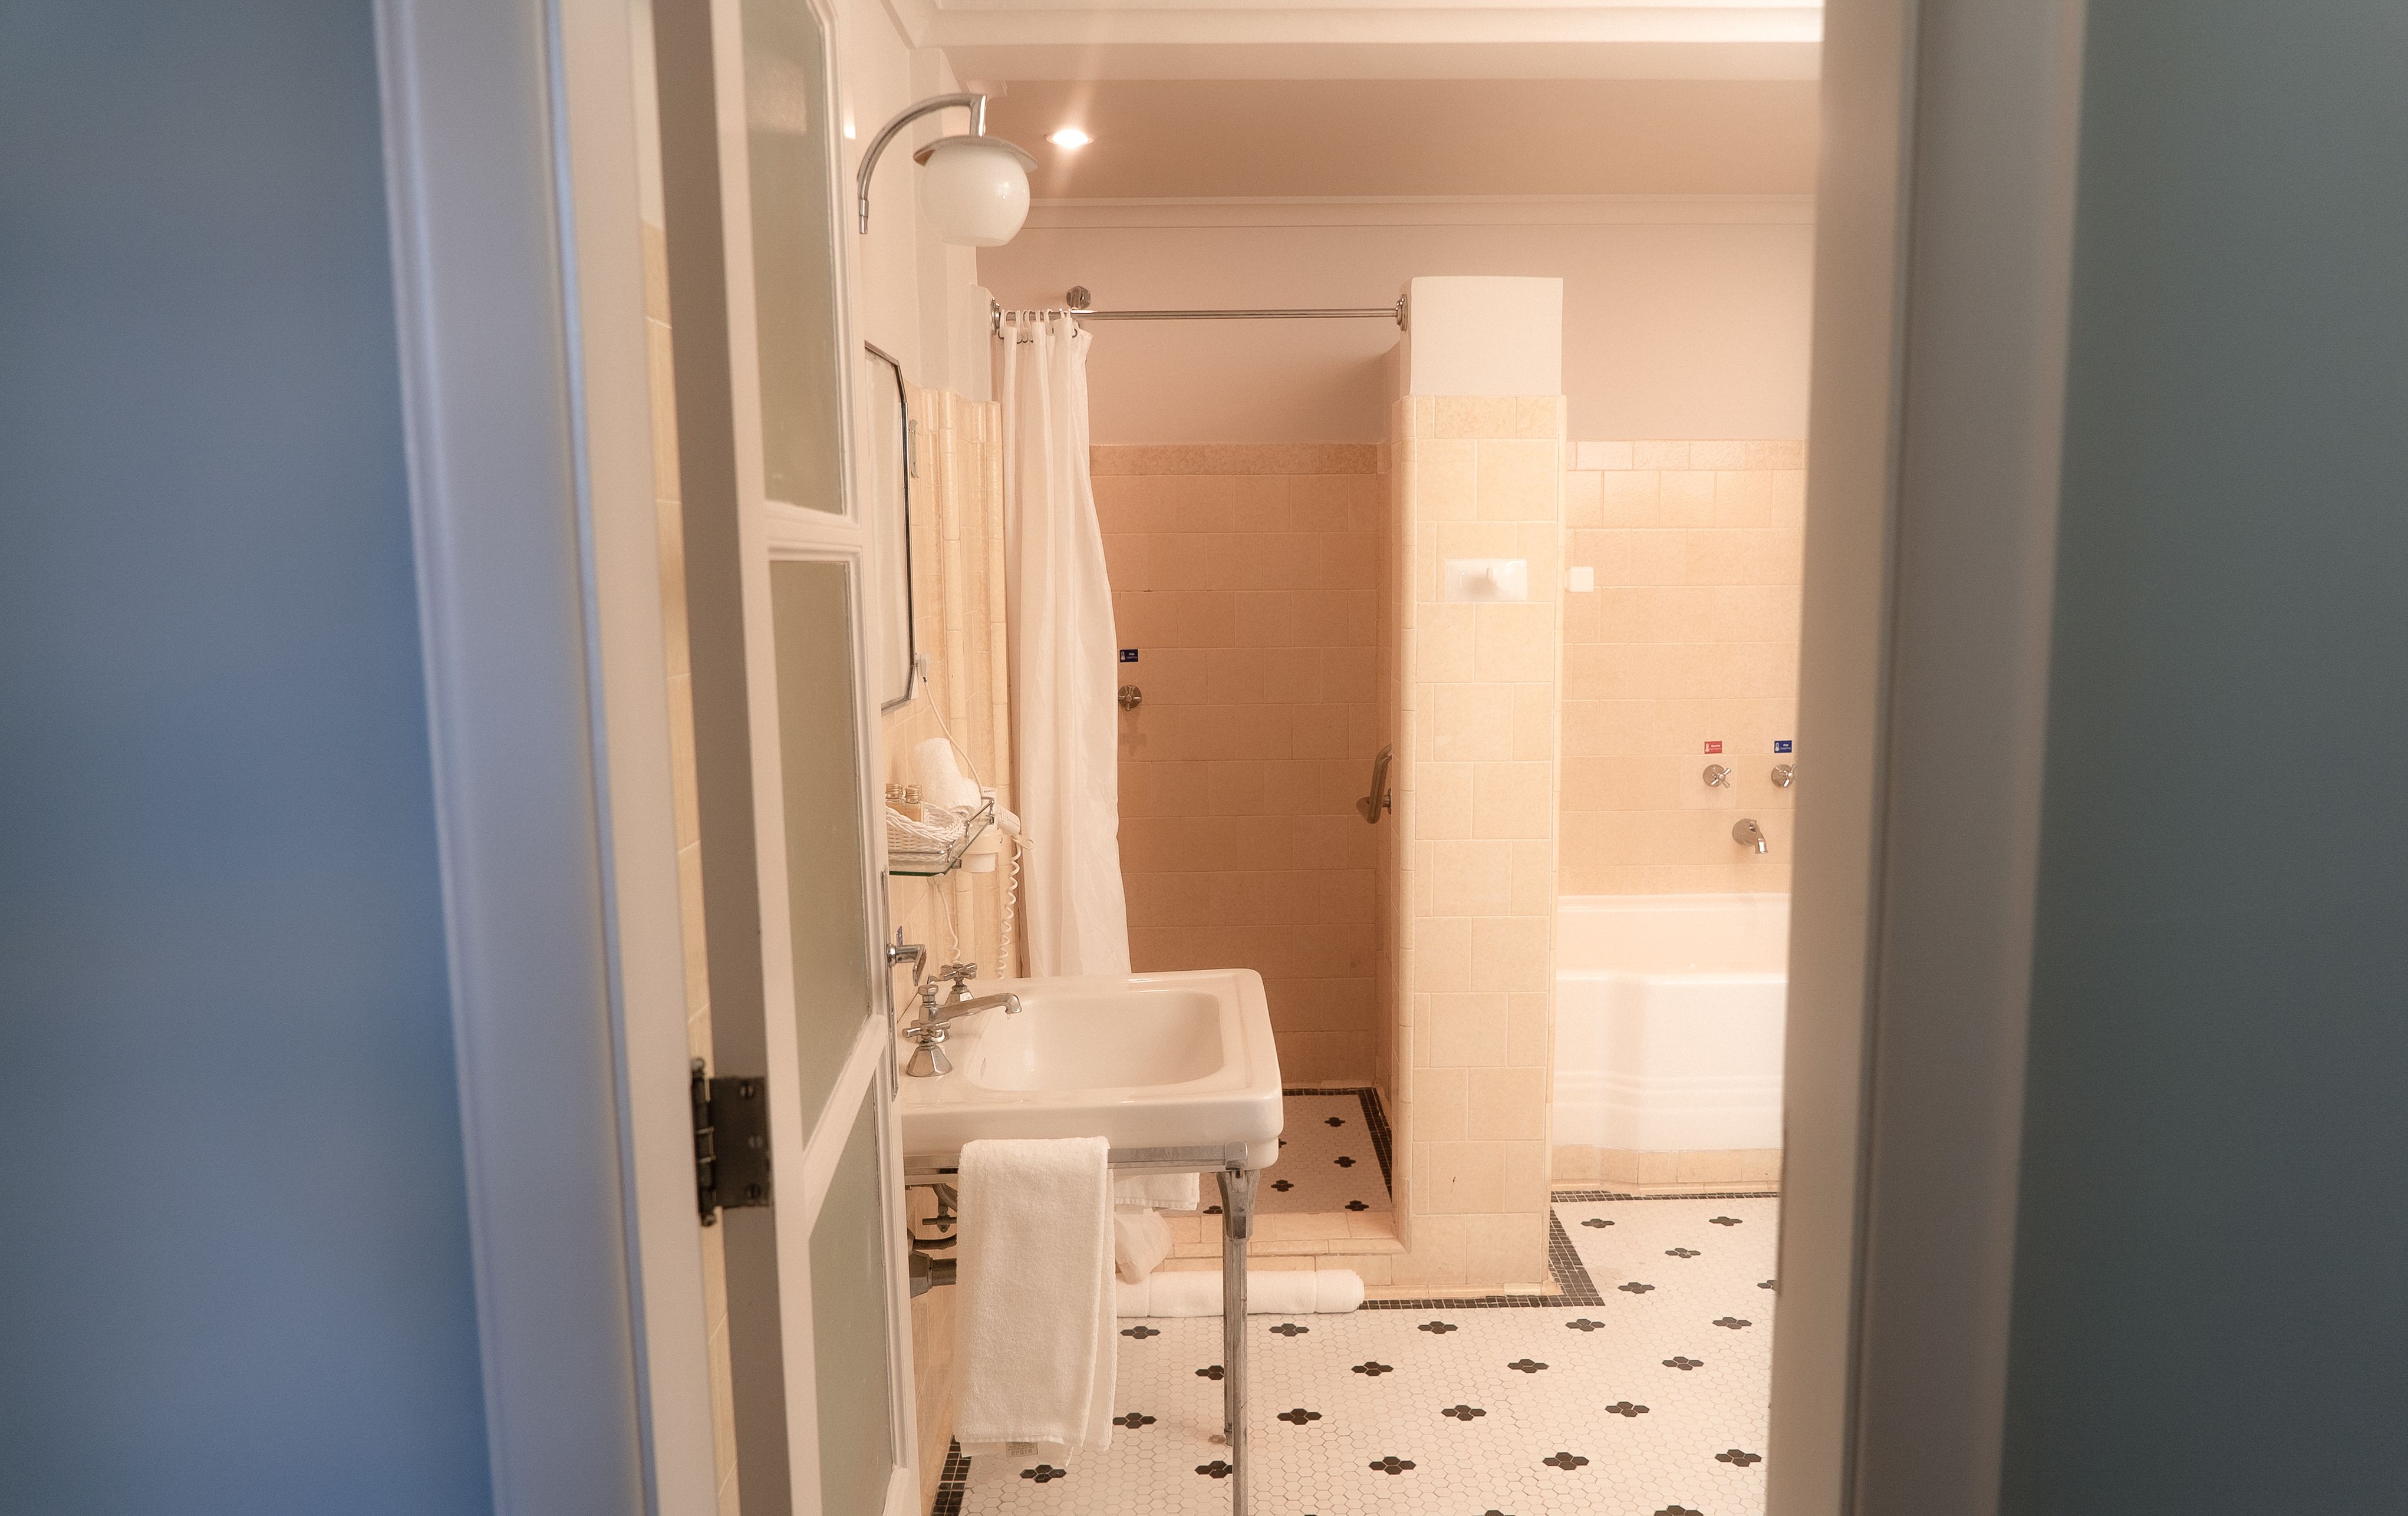 A fotografia colorida mostra um banheiro antigo, com partilhas pretas e brancas no piso e azulejos rosados na parede. Vê-se uma pia, um chuveiro e uma banheira